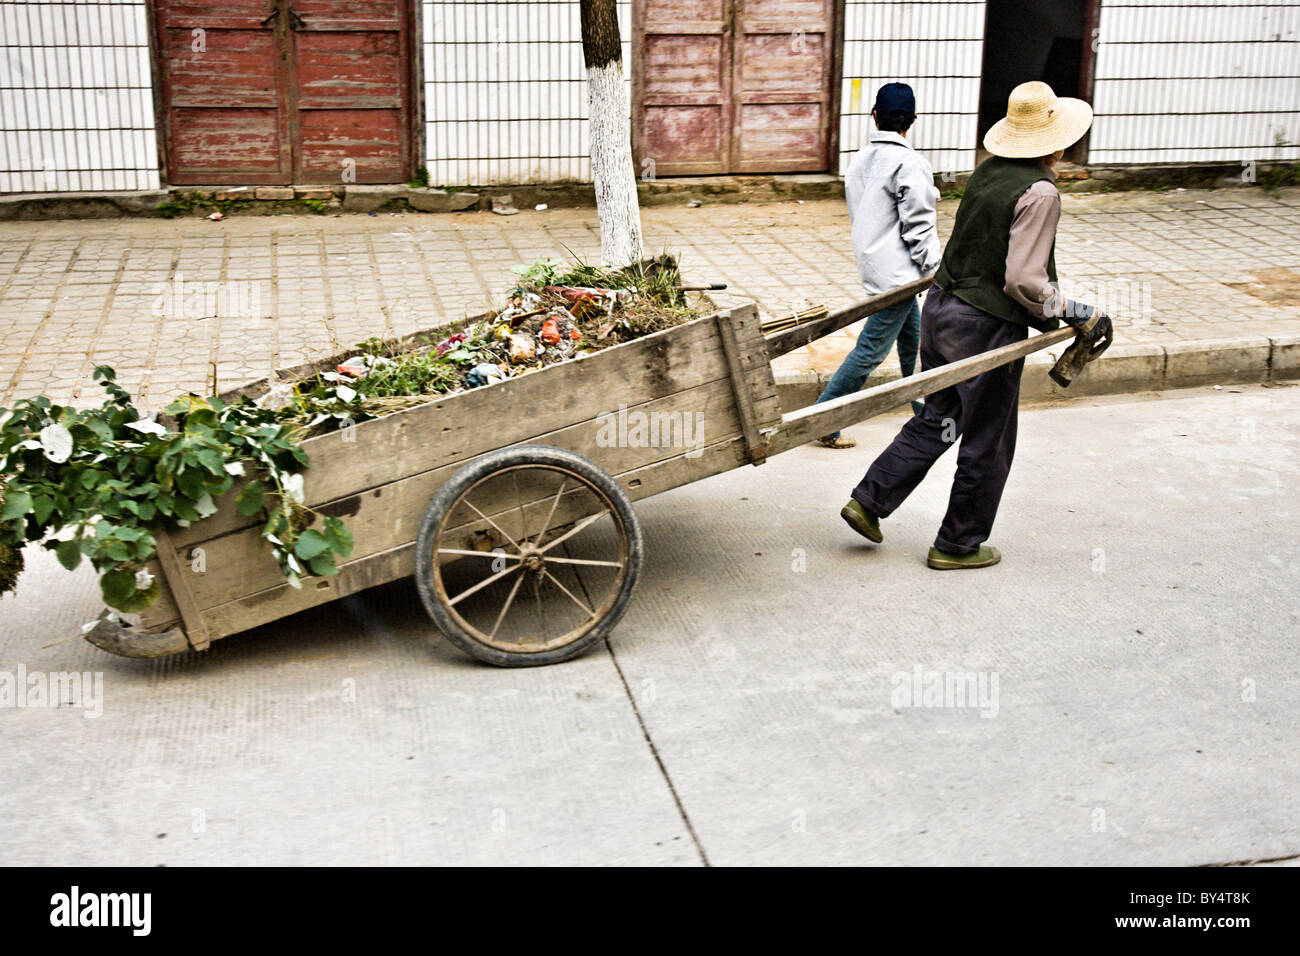 CHINA, YICHANG, SANDOUPING: Straßenszene von älteren Bäuerin und ihrer Tochter einen Holzkarren ziehen Stockfoto